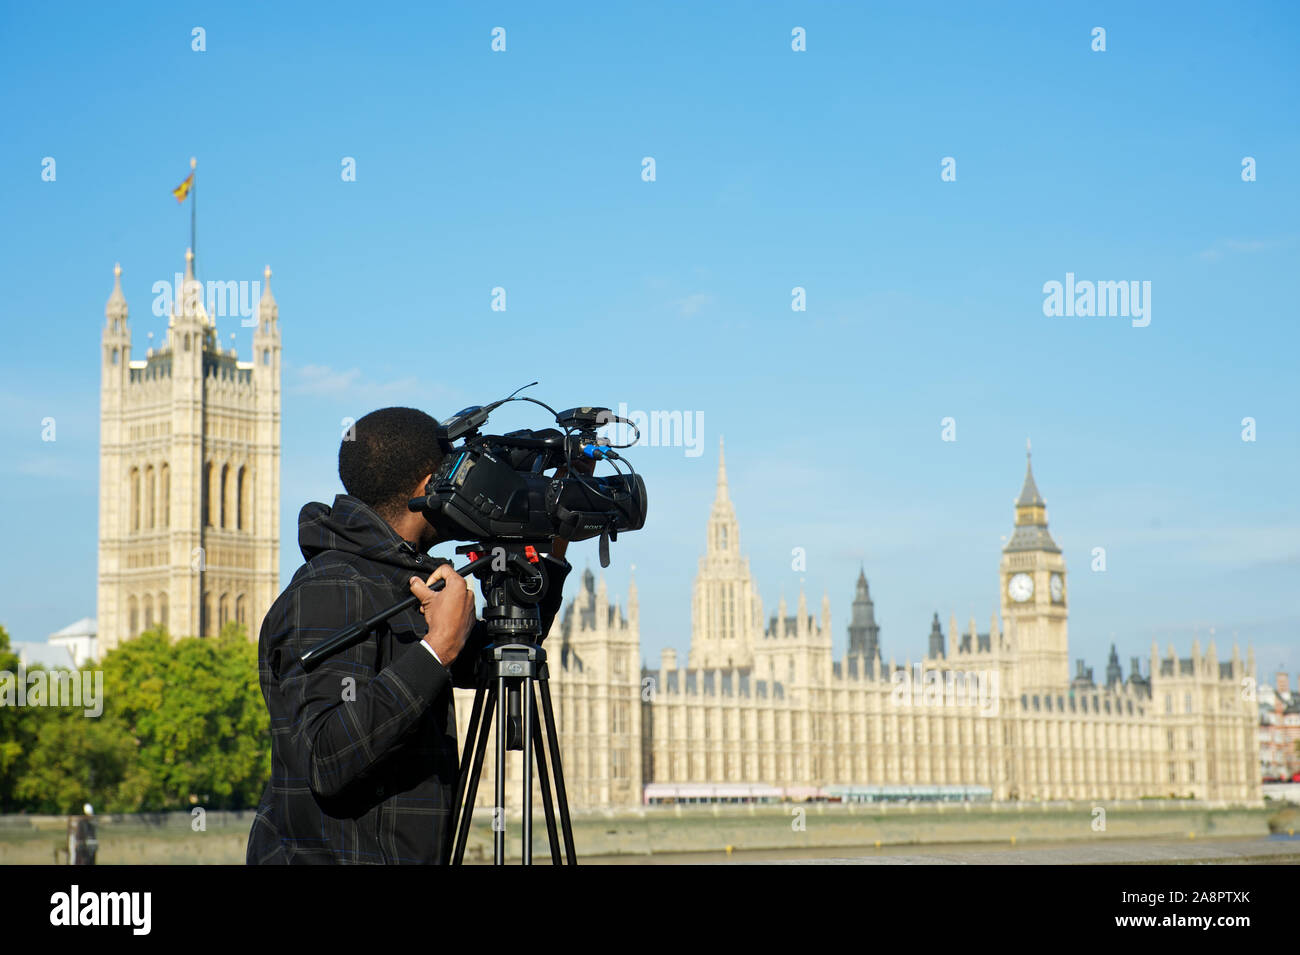 Londra - 14 OTTOBRE 2011: Un video cameraman filma Westminster Palace. La città ospita la più grande emittente al mondo, la BBC. Foto Stock